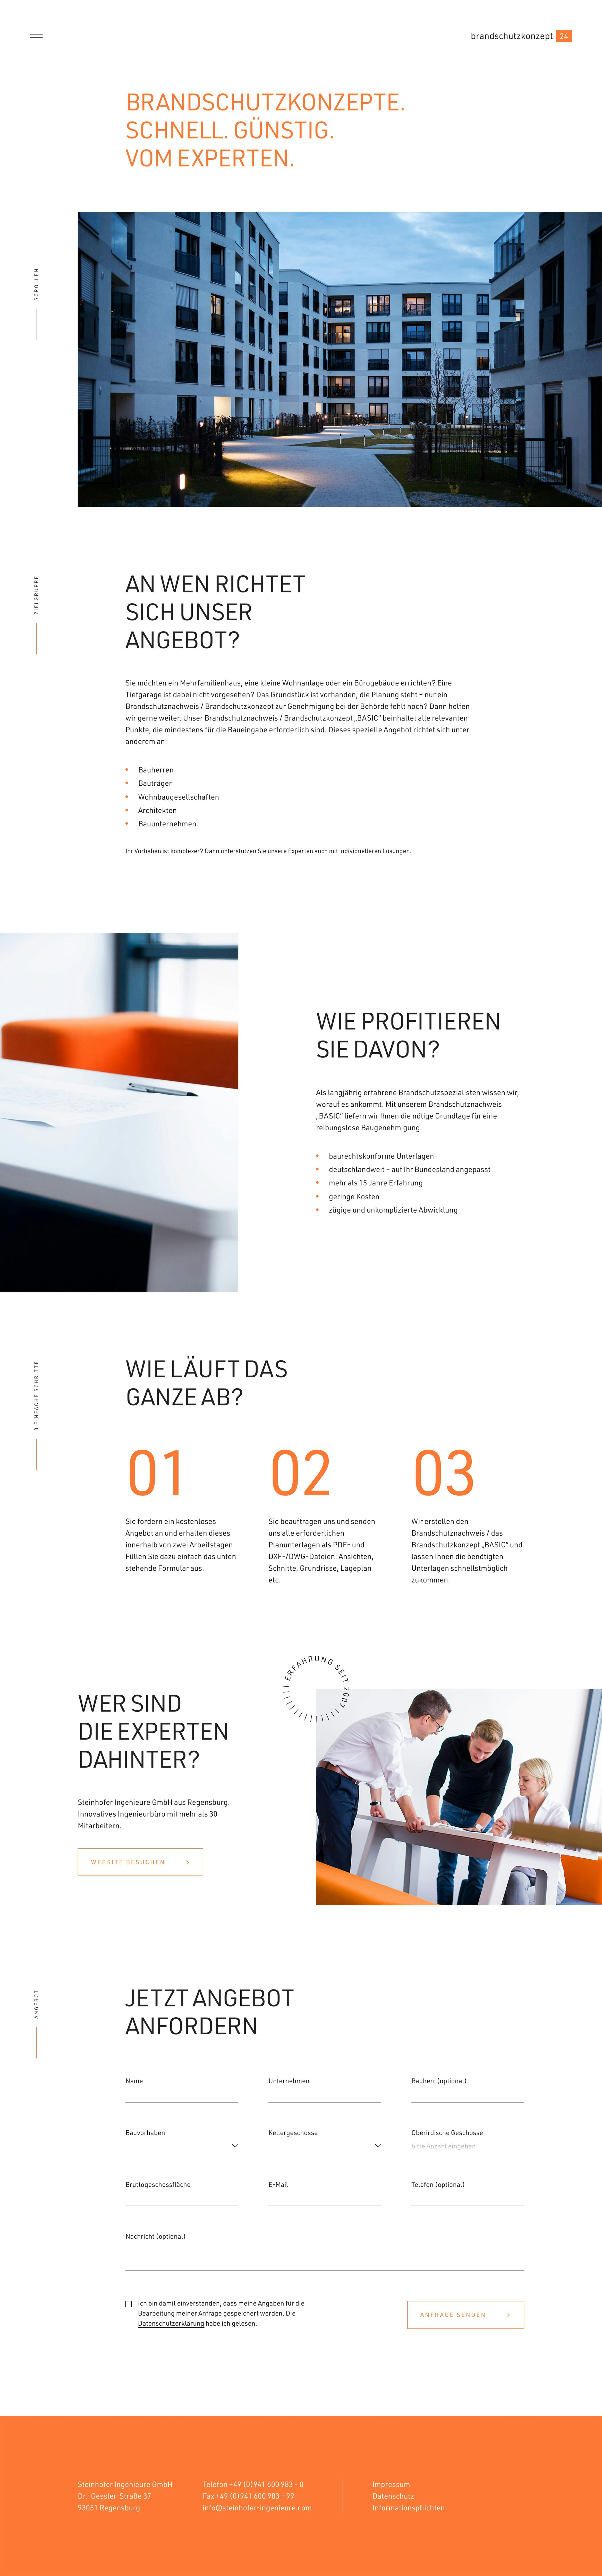 Brandschutzkonzept24 Website Screenshot